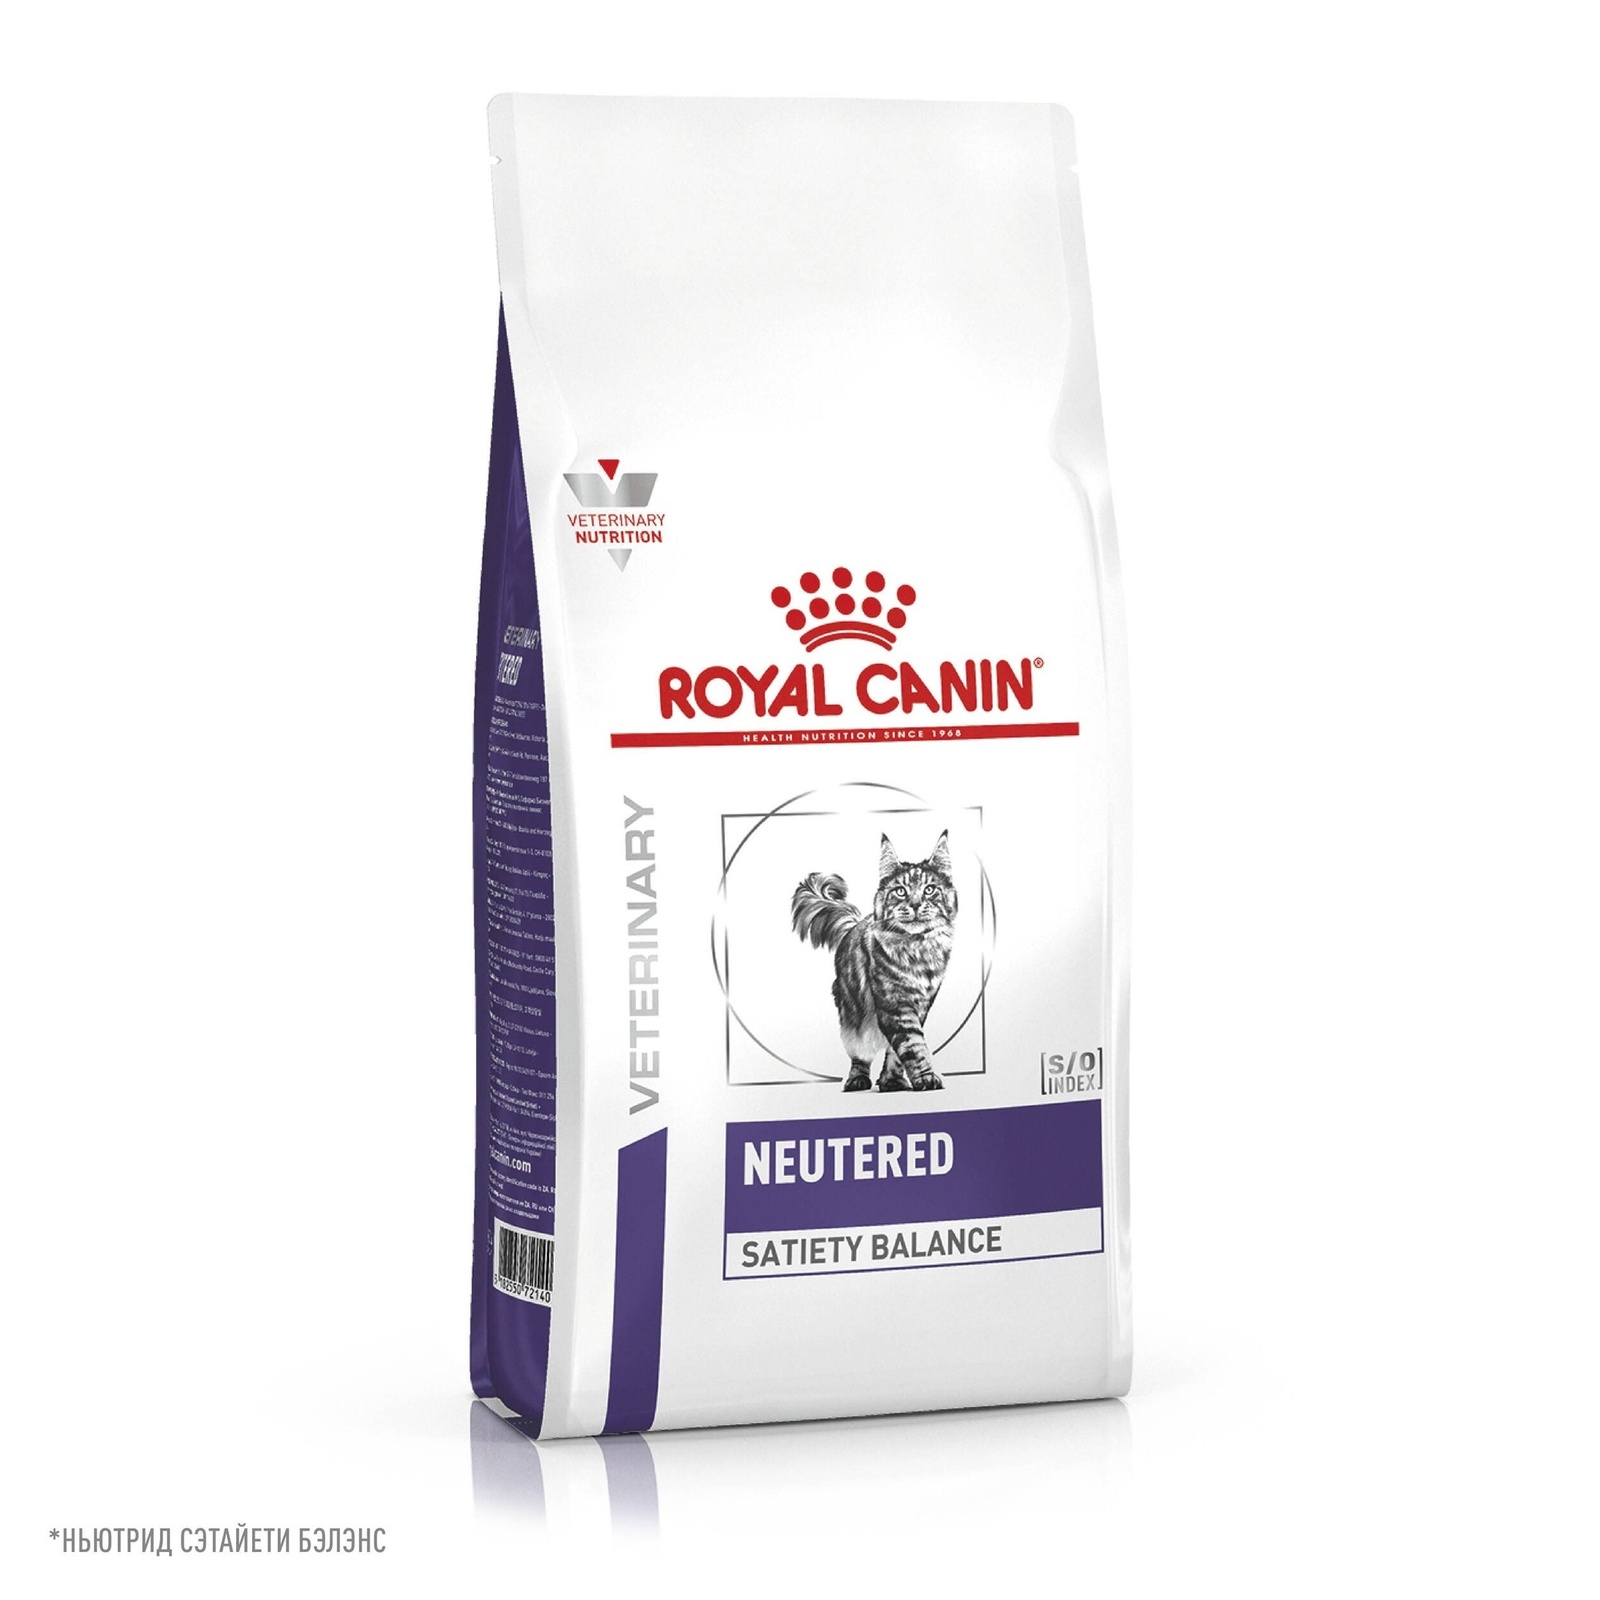 Royal Canin (вет.корма) Royal Canin (вет.корма) для кастрированных котов и кошек, с пониженной калорийностью для профилактики МКБ (300 г)